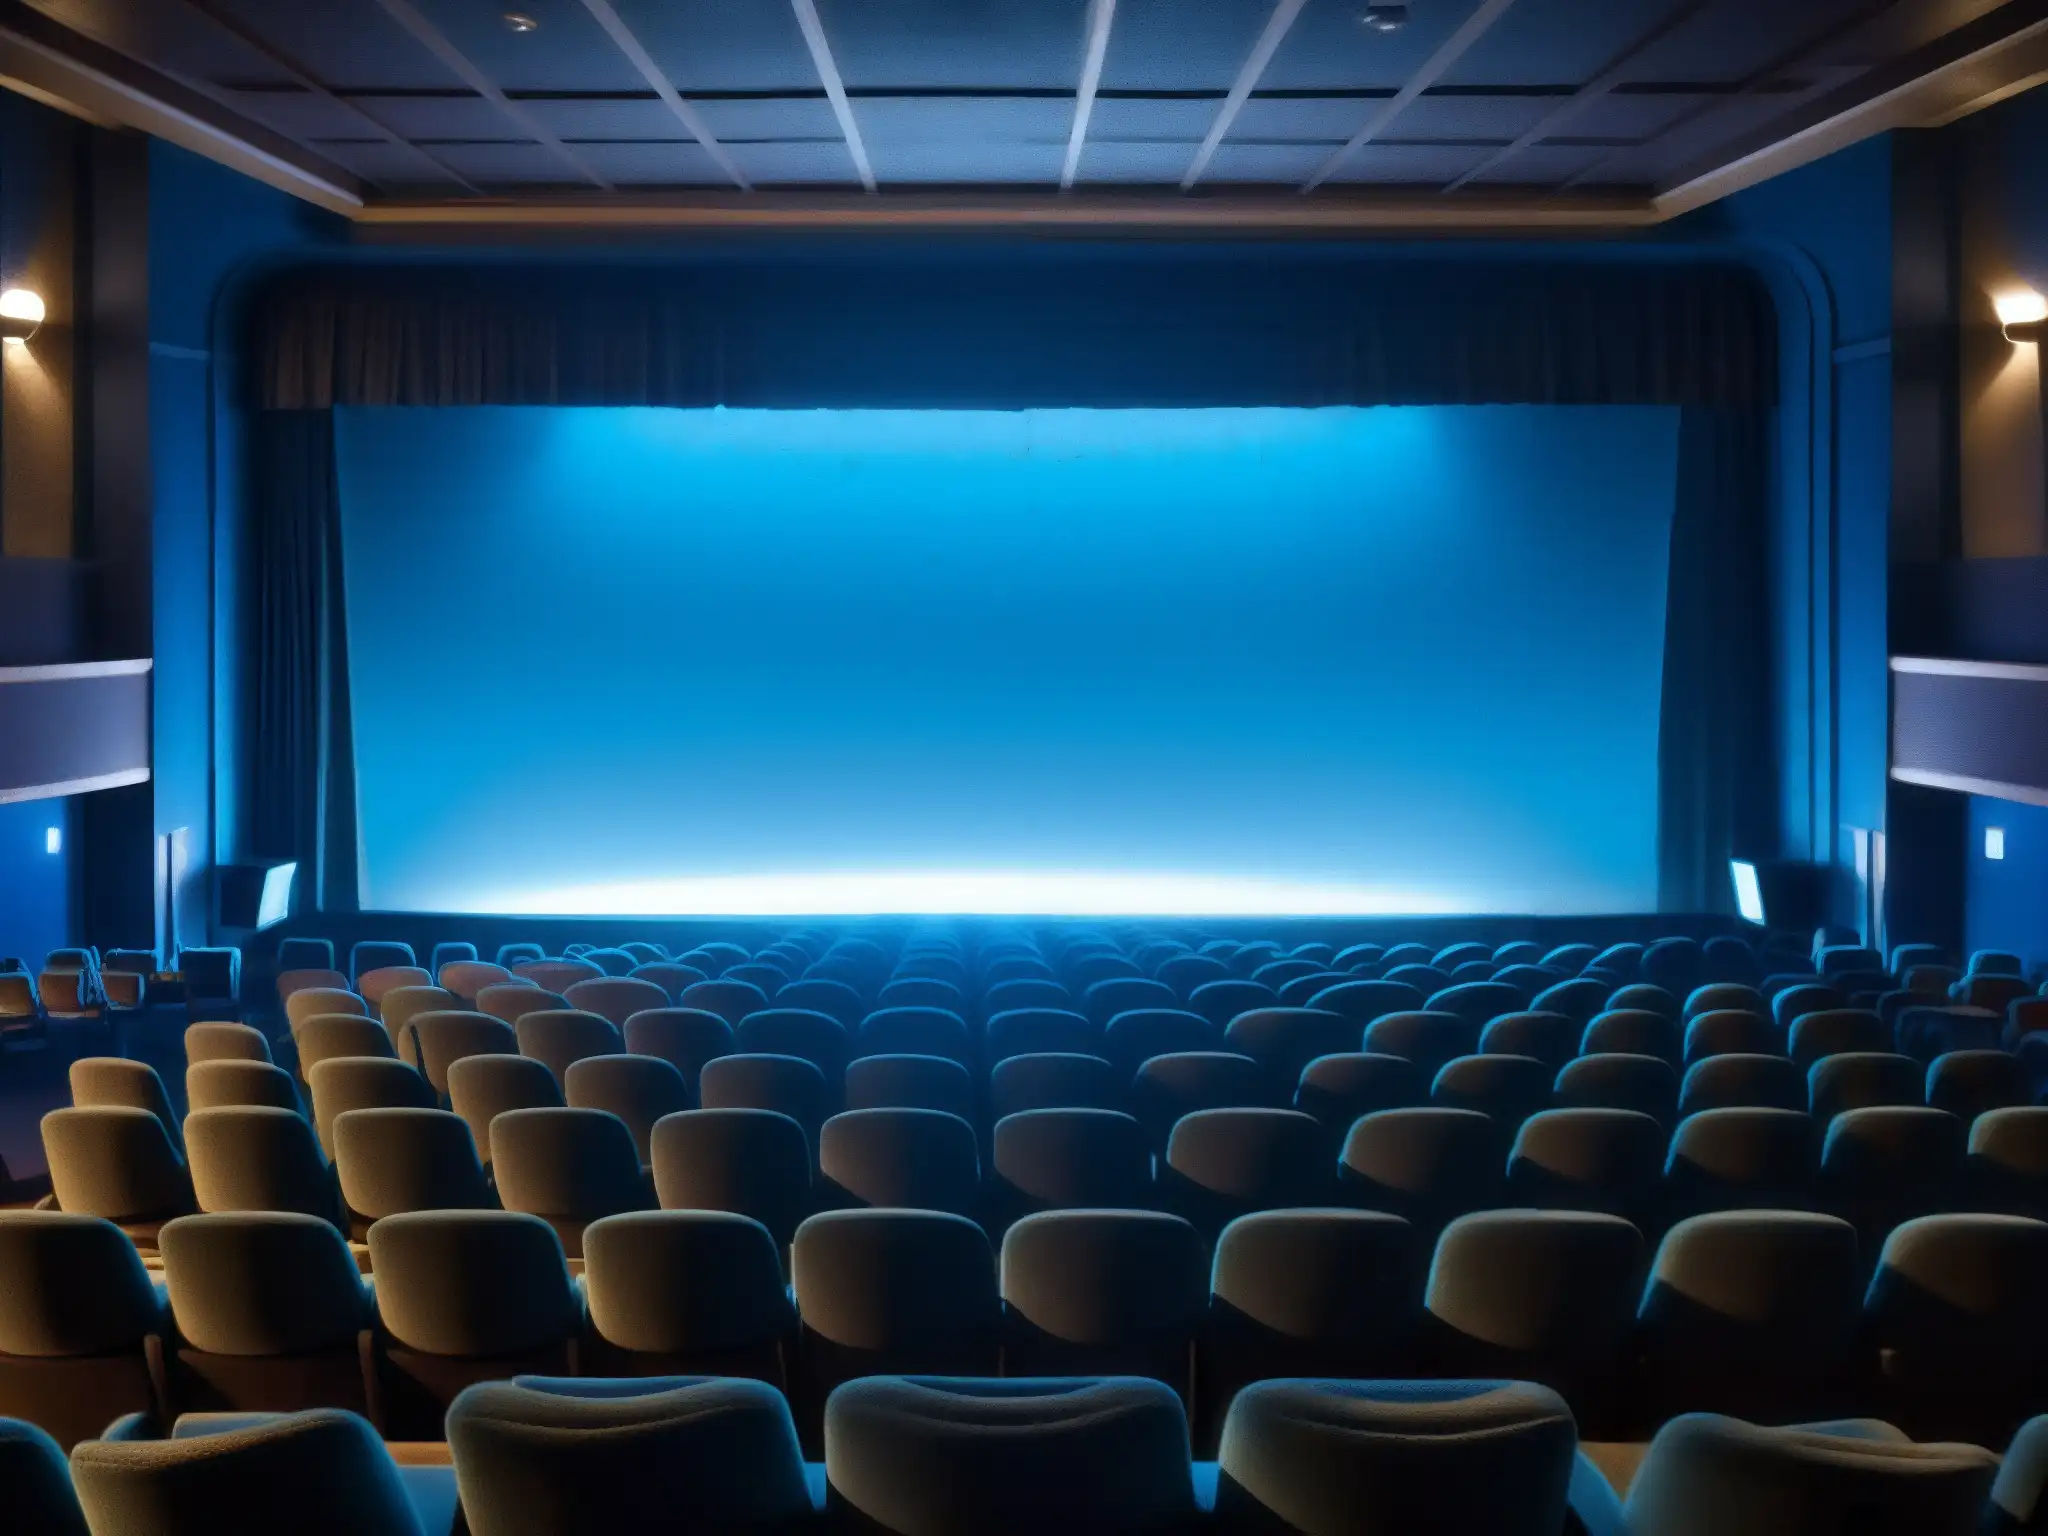 Un cine oscuro con filas de asientos vacíos, la pantalla iluminada con luz azul, mostrando una figura misteriosa en un escenario urbano